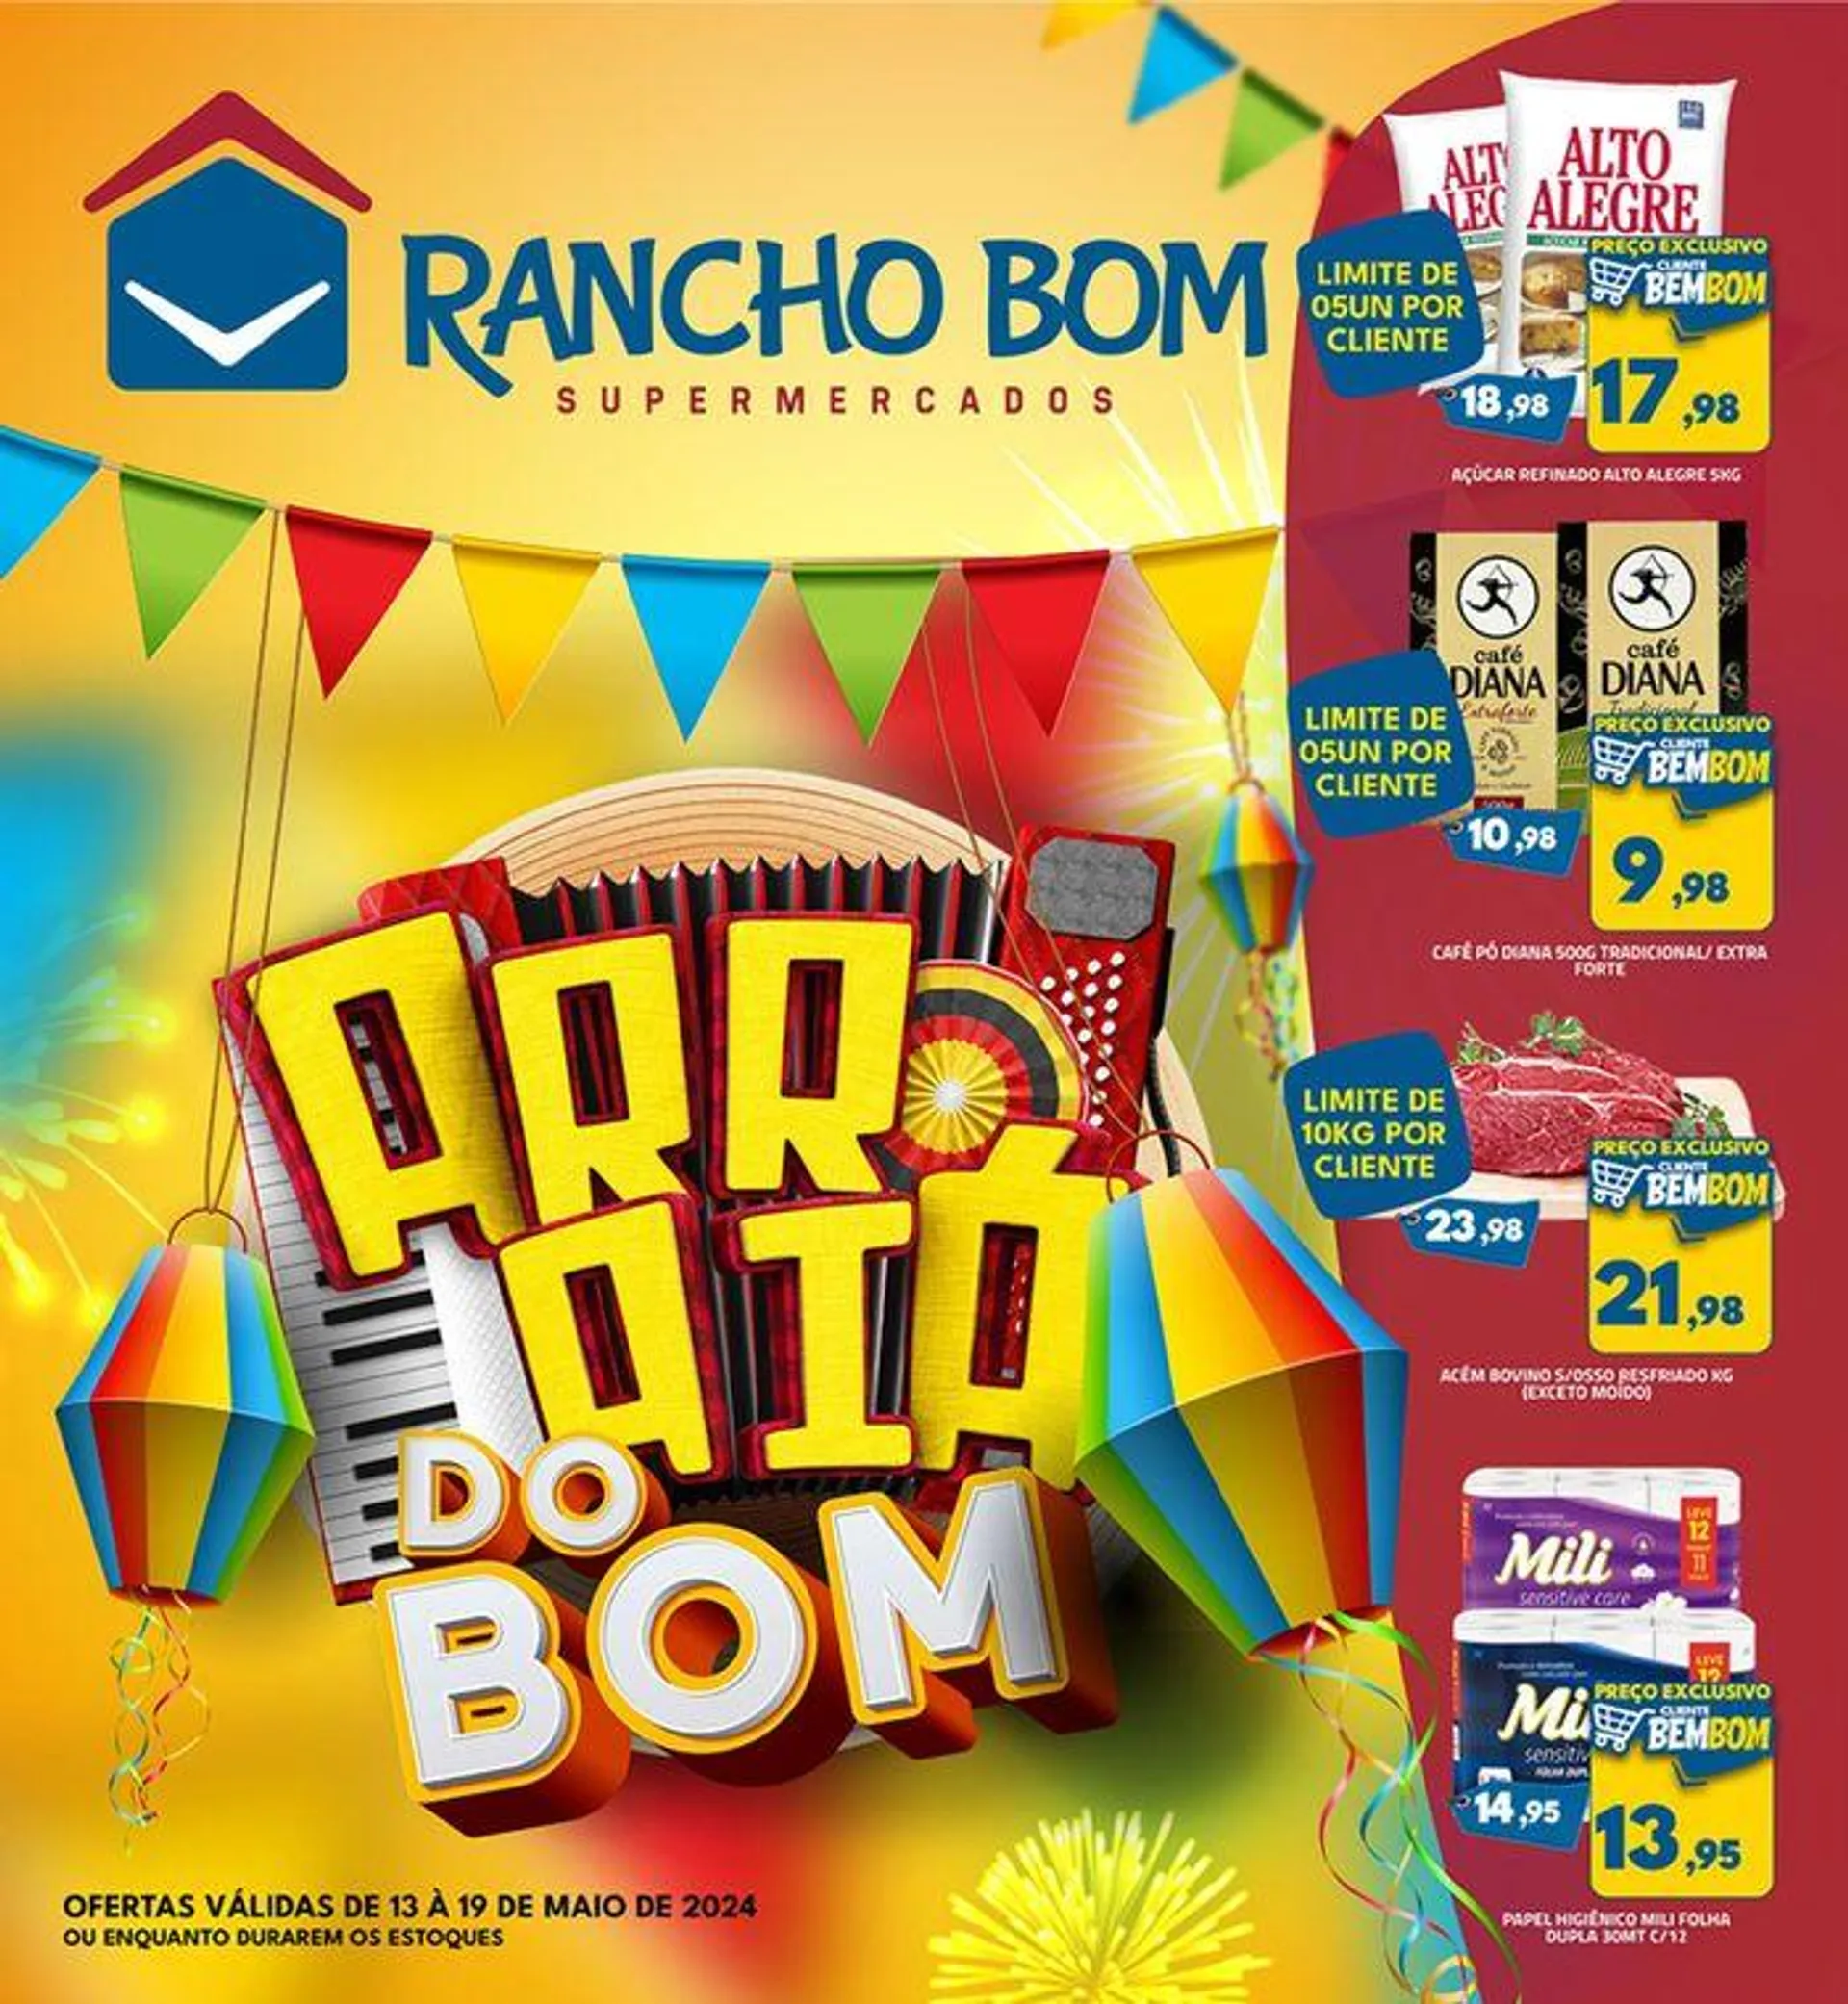 Ofertas Rancho Bom Supermercados - 1